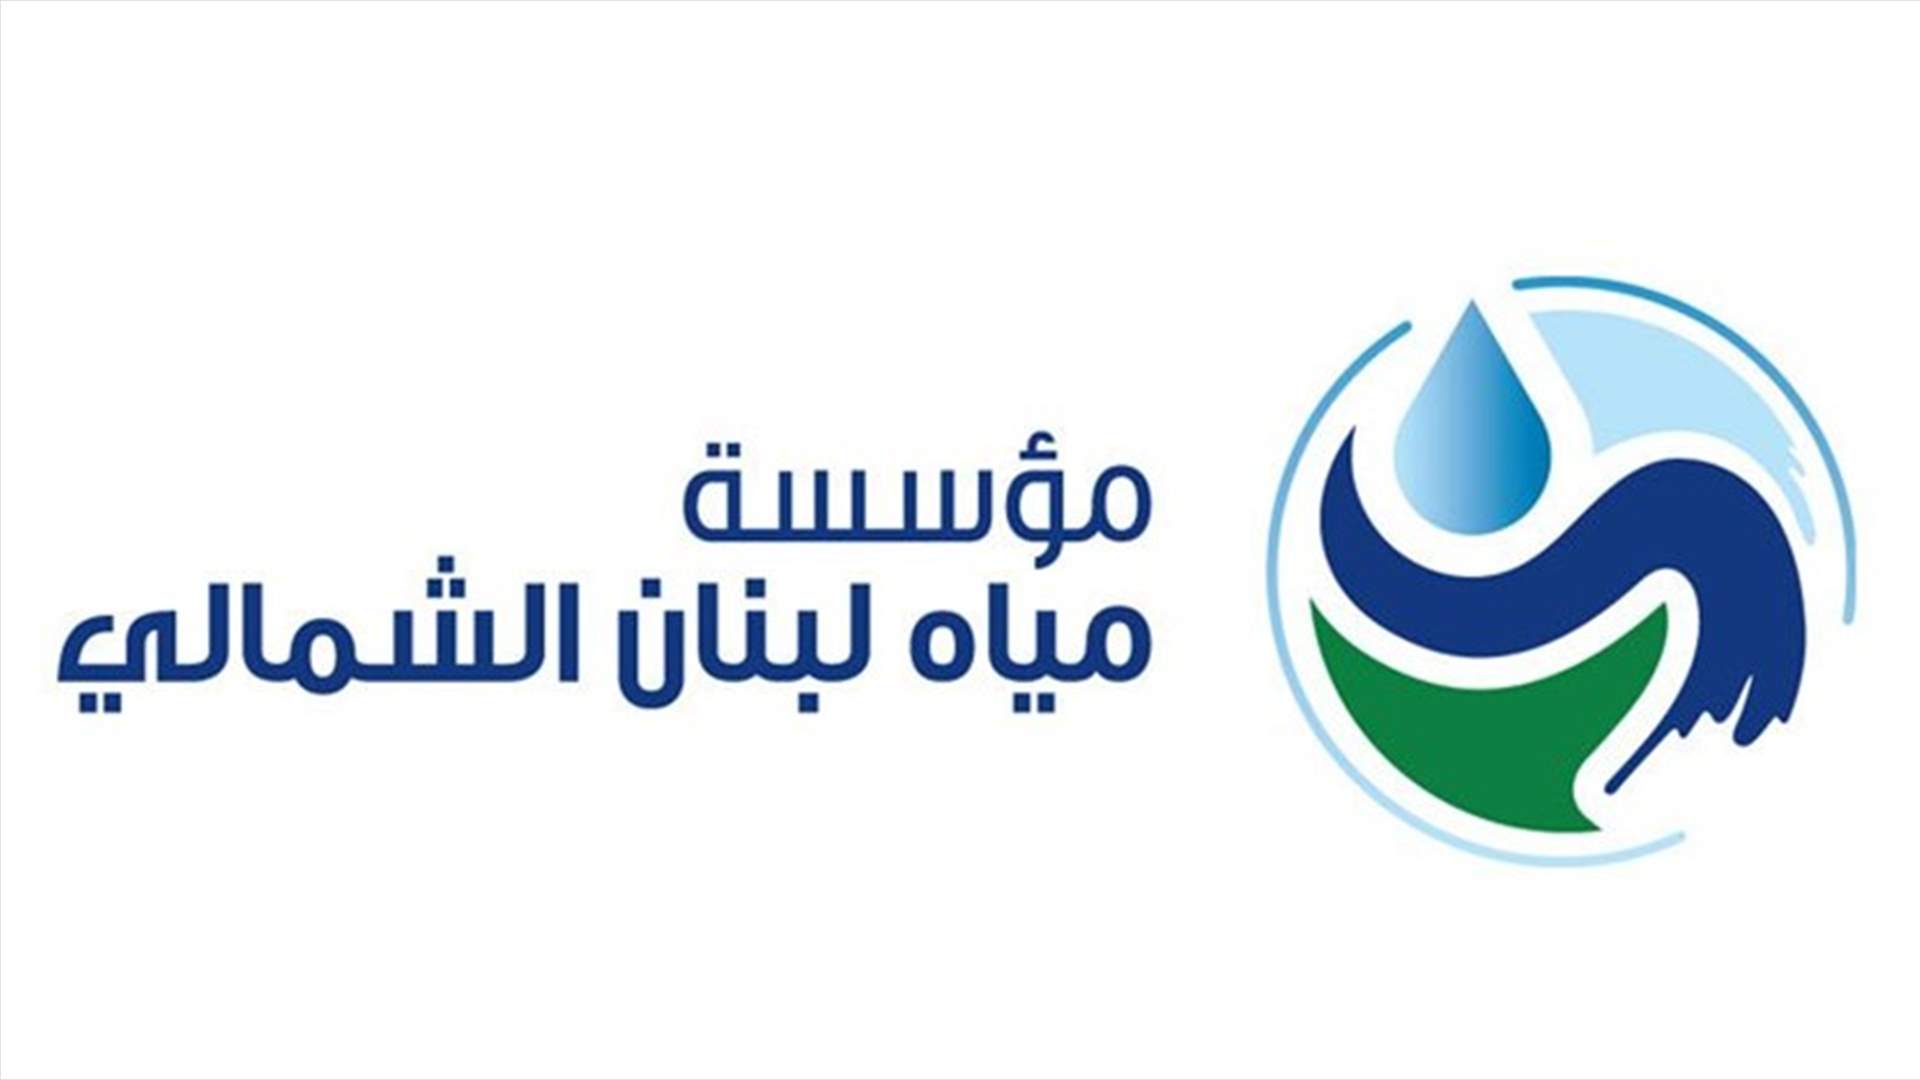 نقابة مياه لبنان الشمالي ناشدت المنظمات الدولية مساعدة موظفيها للاستمرار في تقديم الخدمات